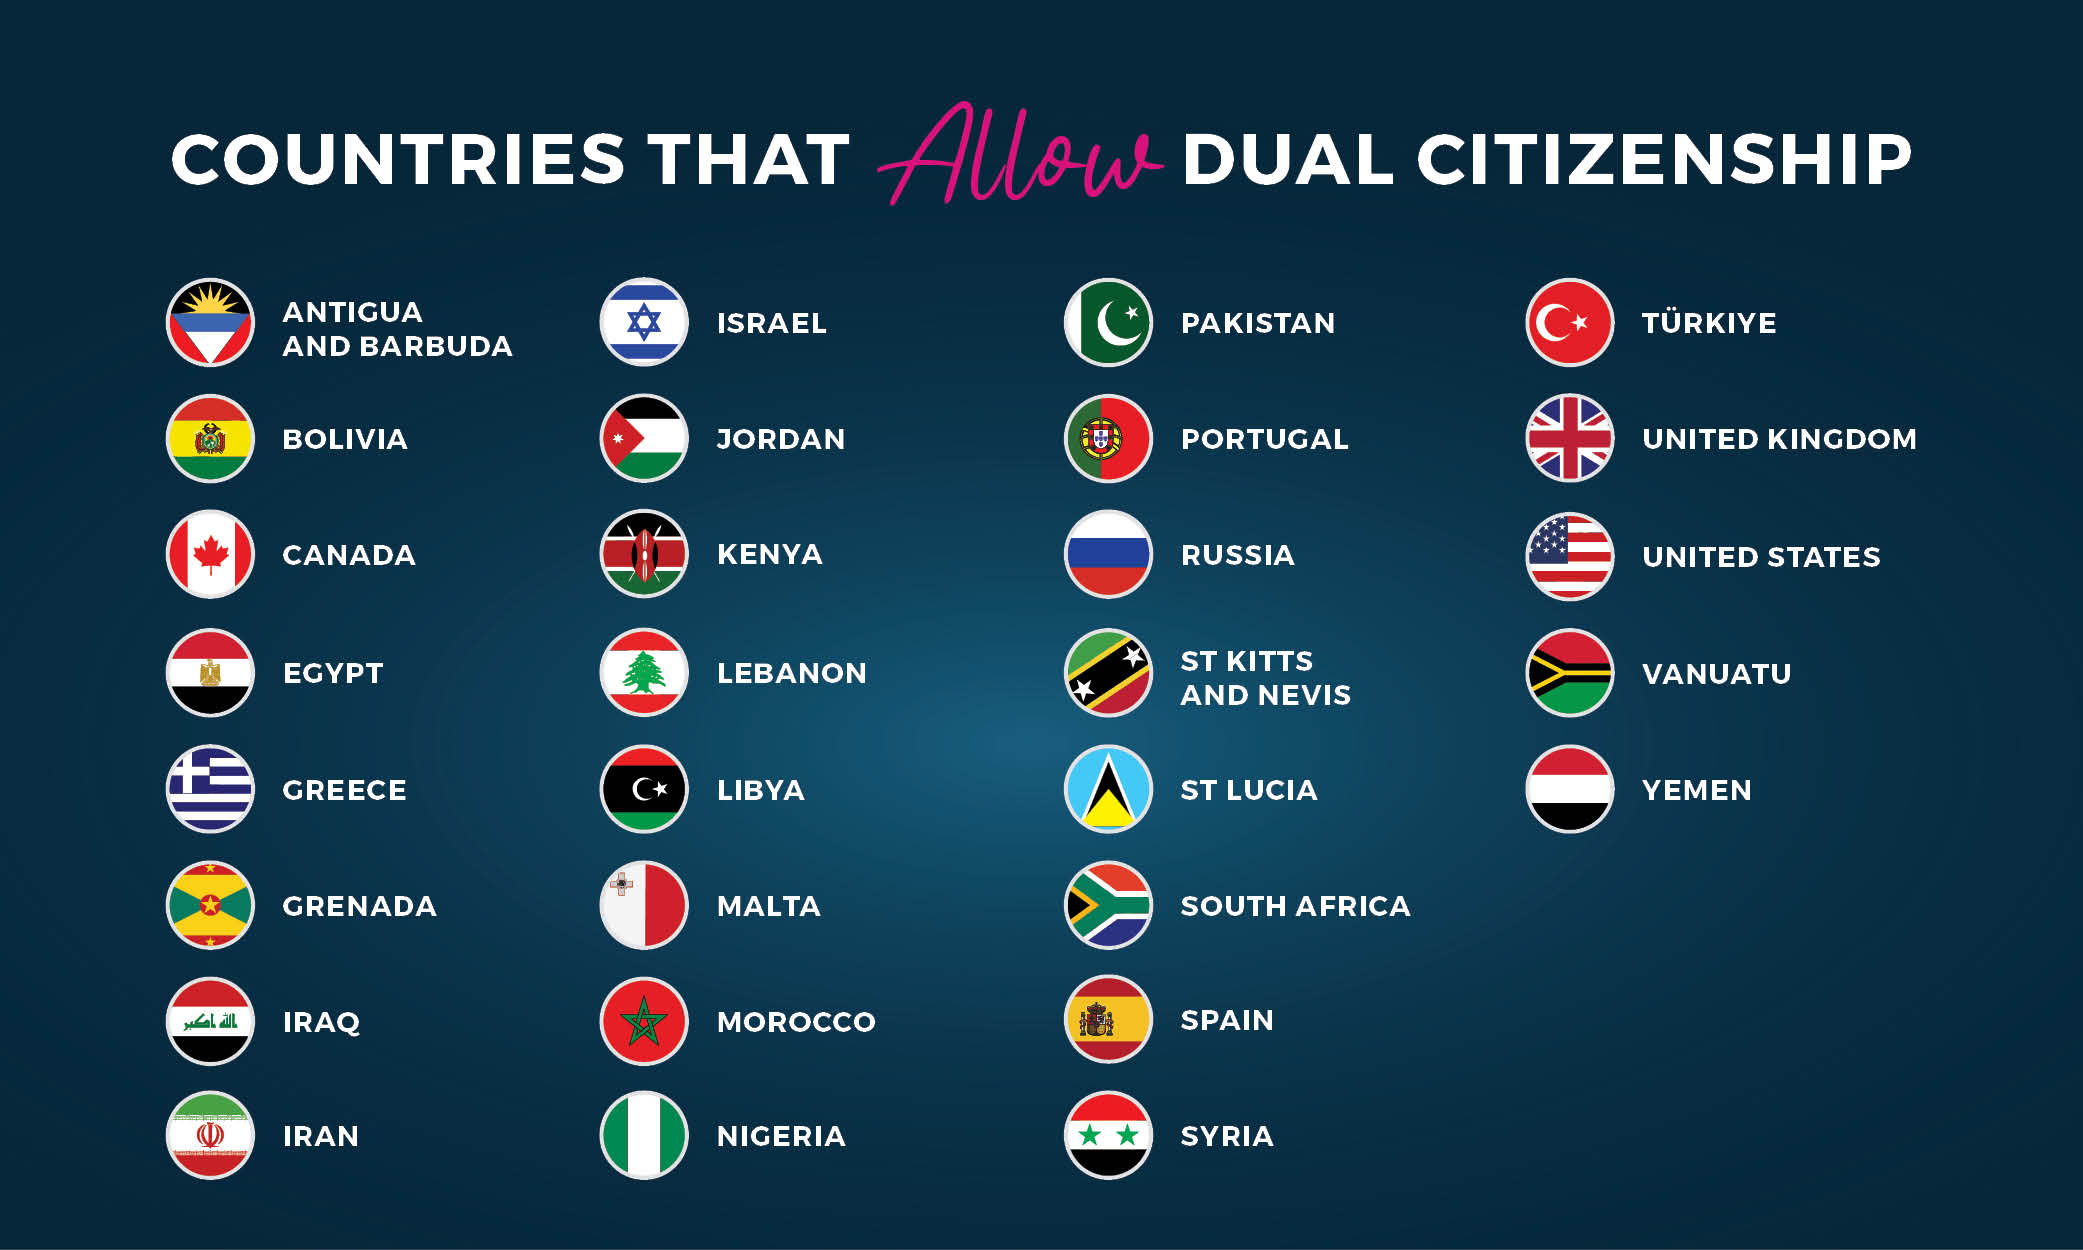 Çifte vatandaşlığa izin veren ülkeler hakkında bilgi edinin.